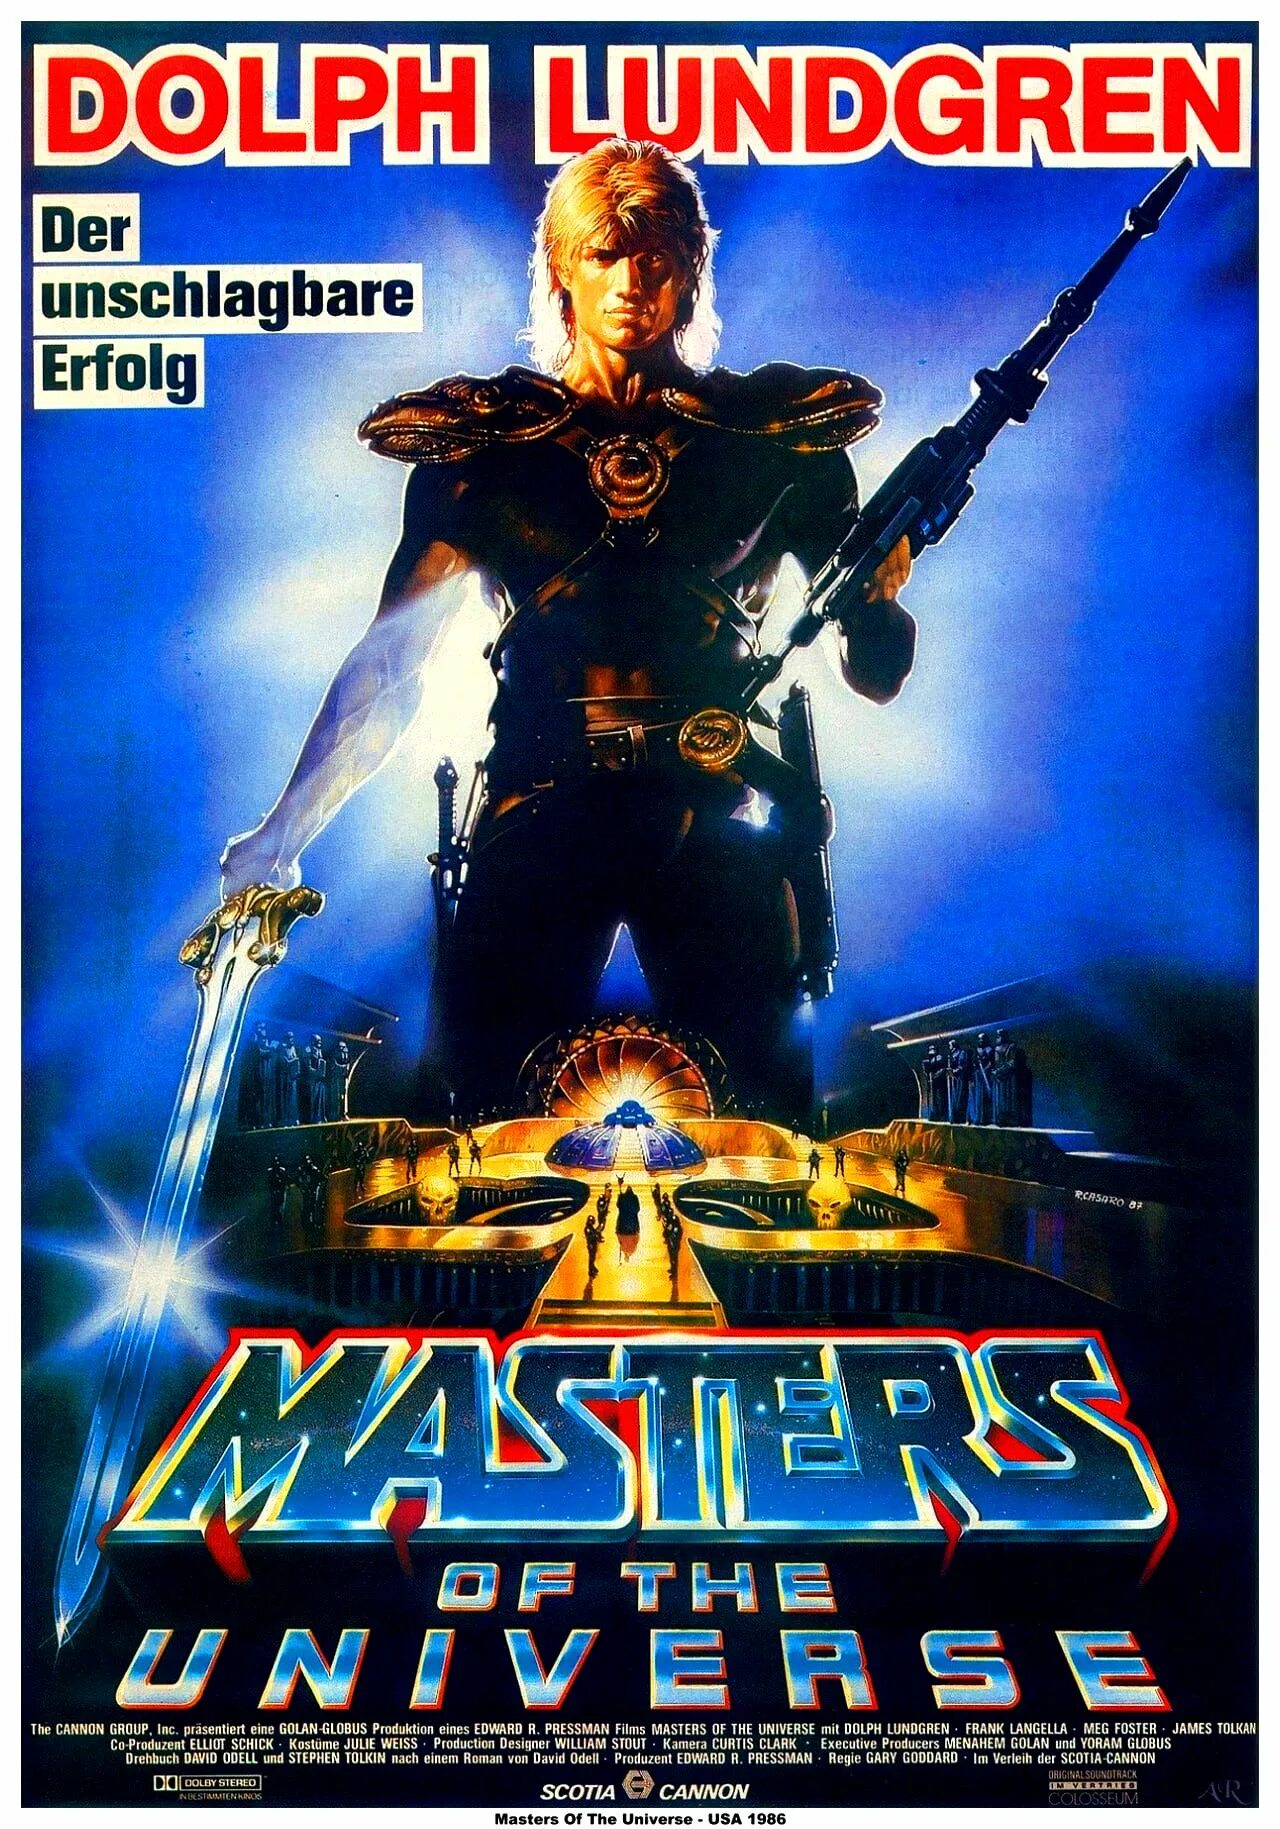 Дольф Лундгрен плакаты 80-90 годов. Masters of the Universe 1987 Постер. Герои боевиков 90-х Дольф Лундгрен. Плакаты 90-х.